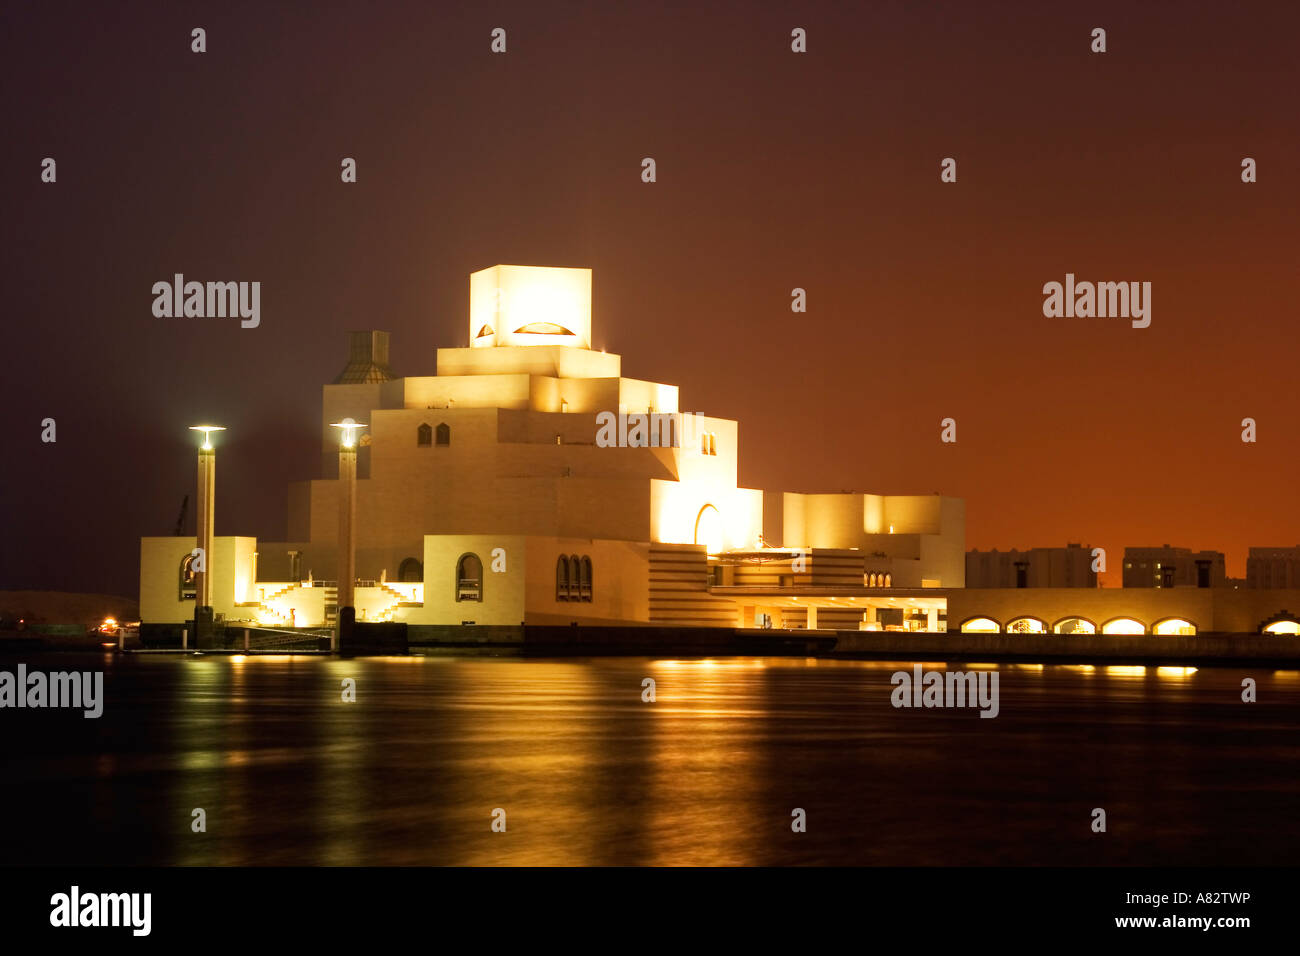 Museo de arte islámico, por el famoso arquitecto I M Pei, en el paseo de la corniche de Doha durante la noche Foto de stock